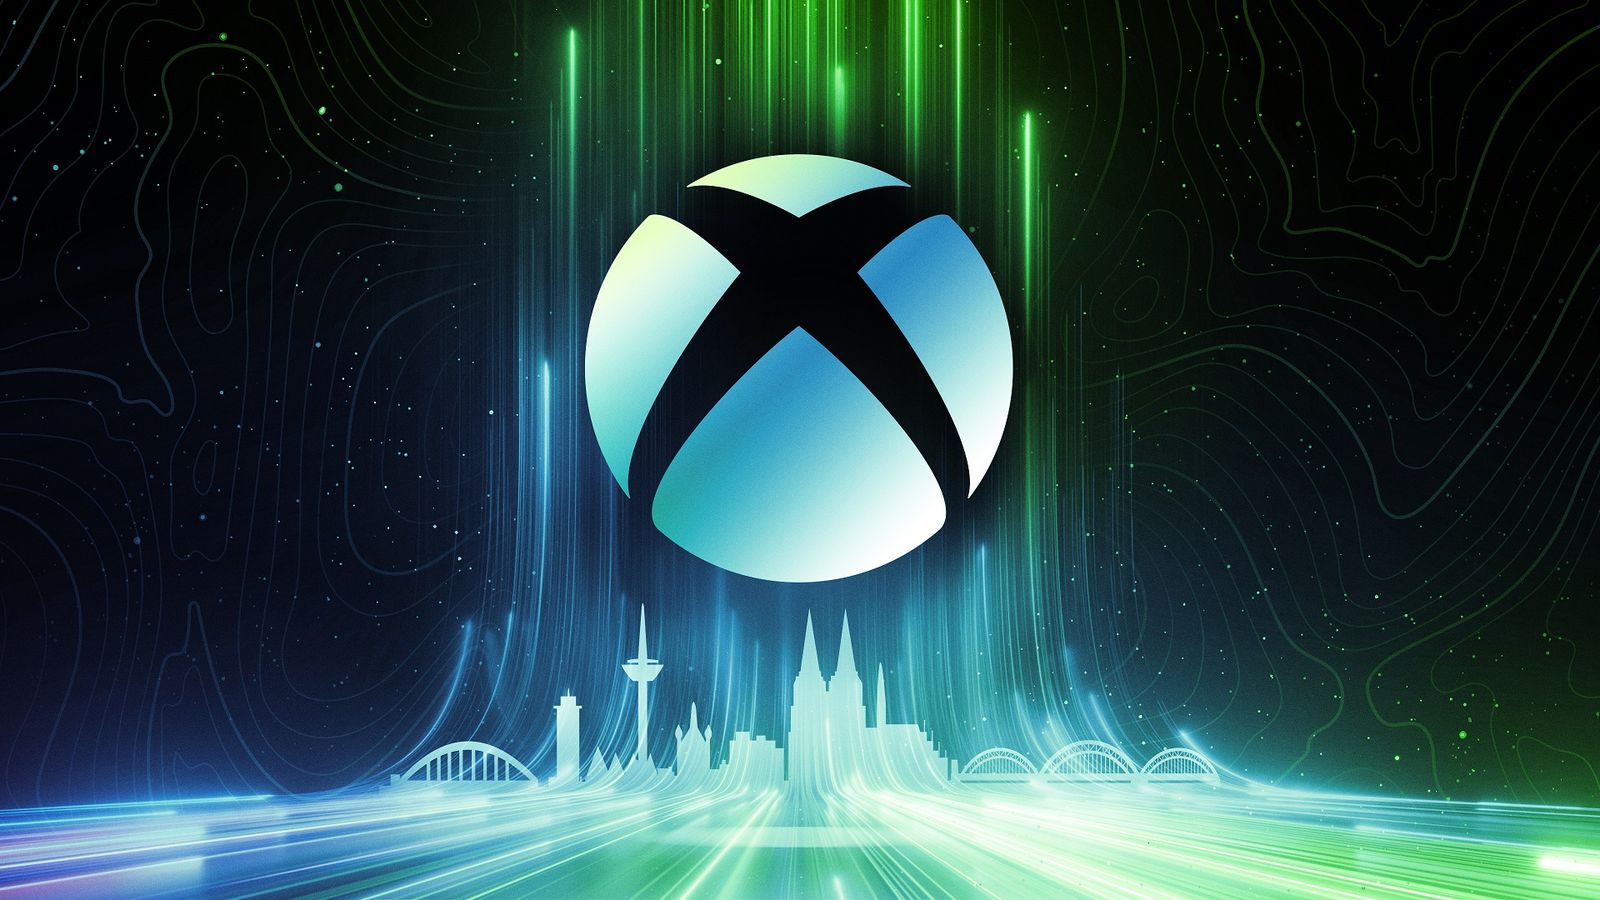 The xbox logo above gamescom